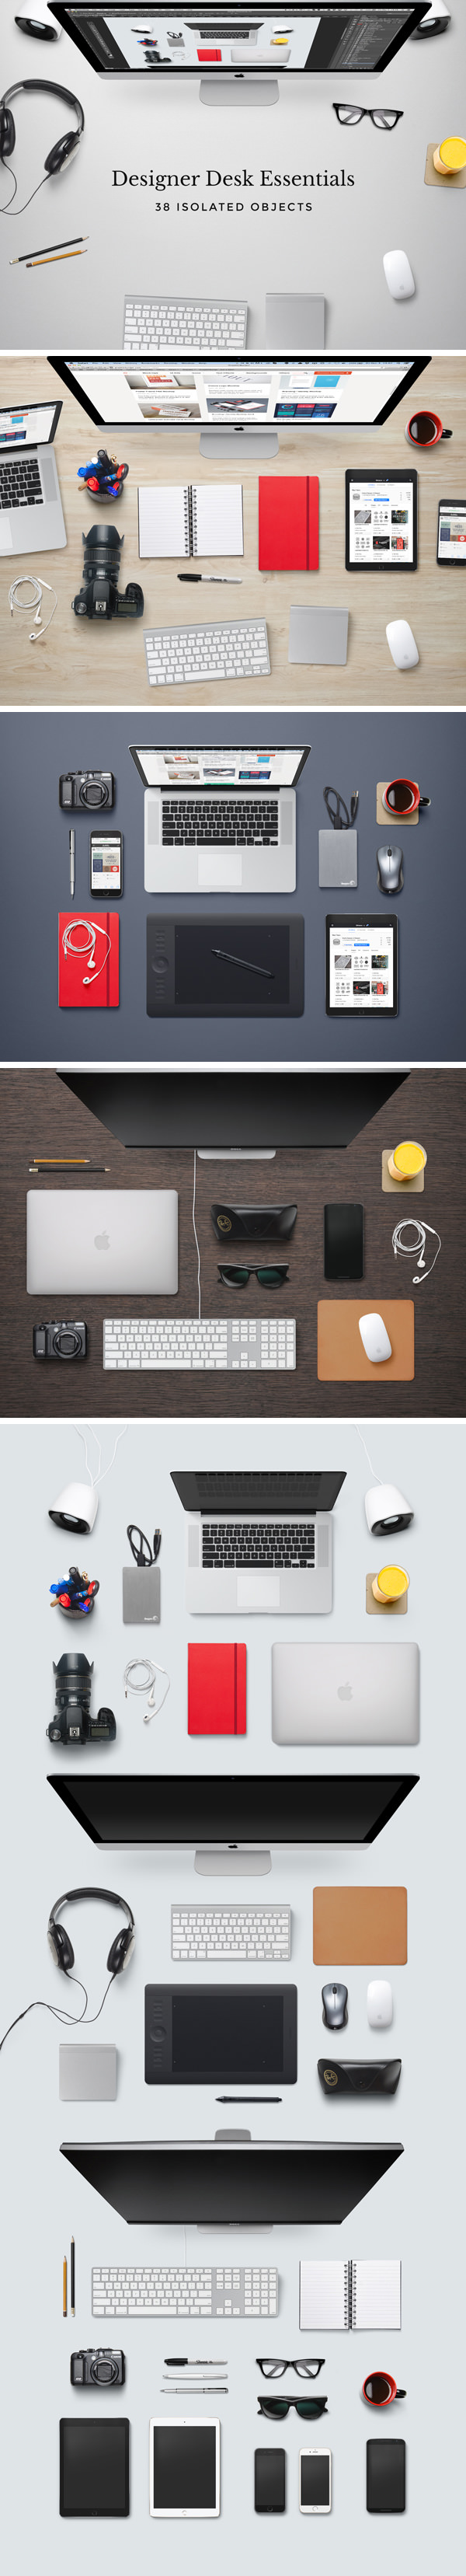 Designer-Desk-Essentials-600